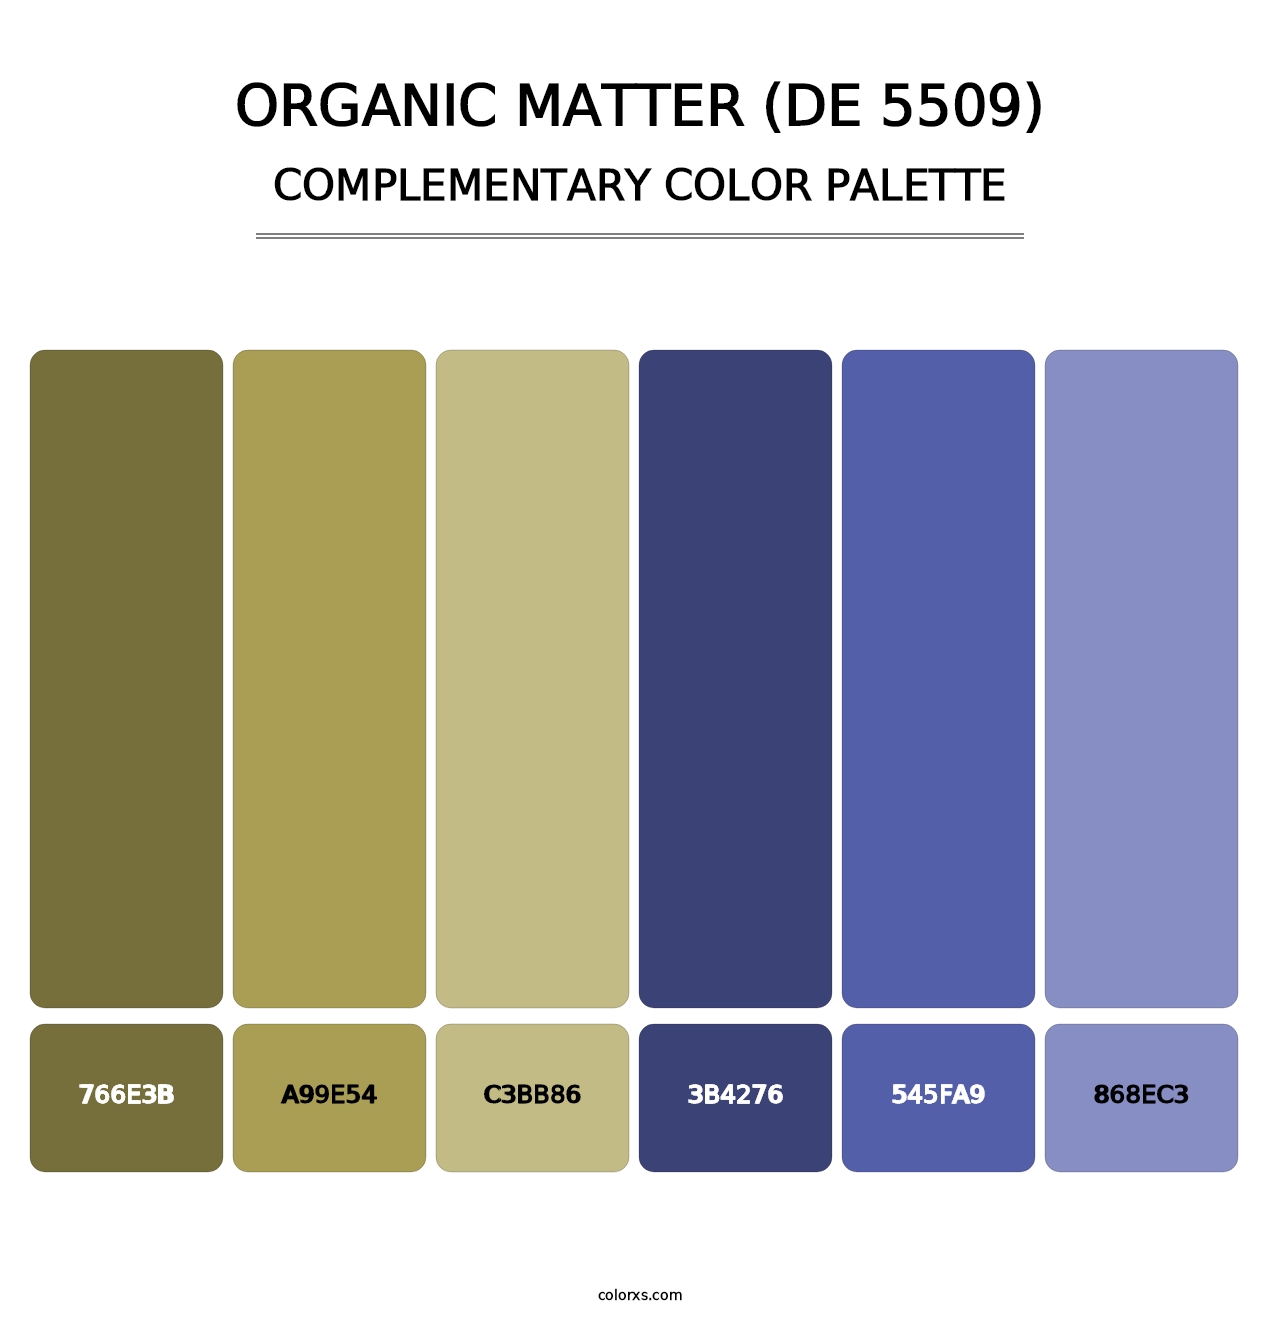 Organic Matter (DE 5509) - Complementary Color Palette